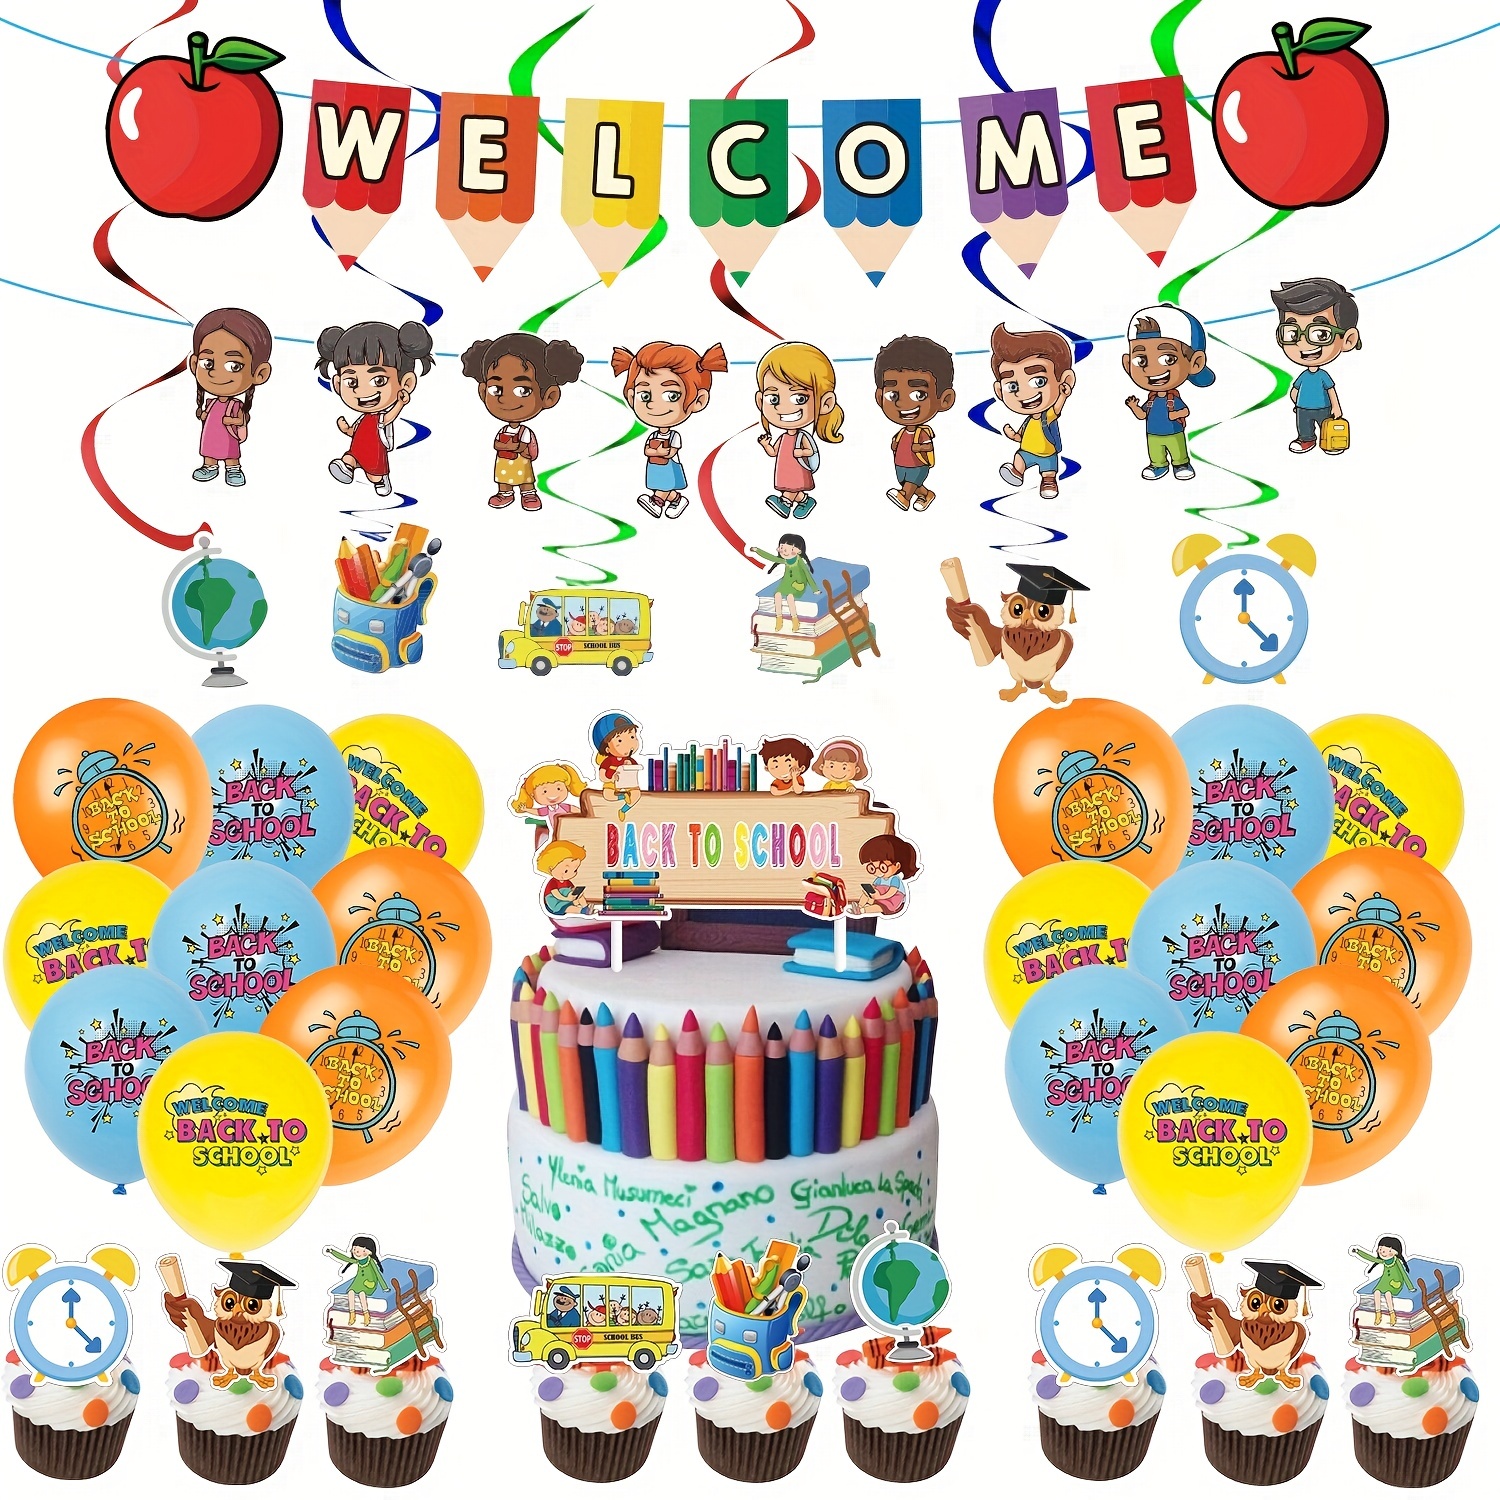 Kits de decoración de fiesta temática de Harry Potter, globos con bandera  para tirar, accesorios para tarjetas de pastel, suministros Vhermosa